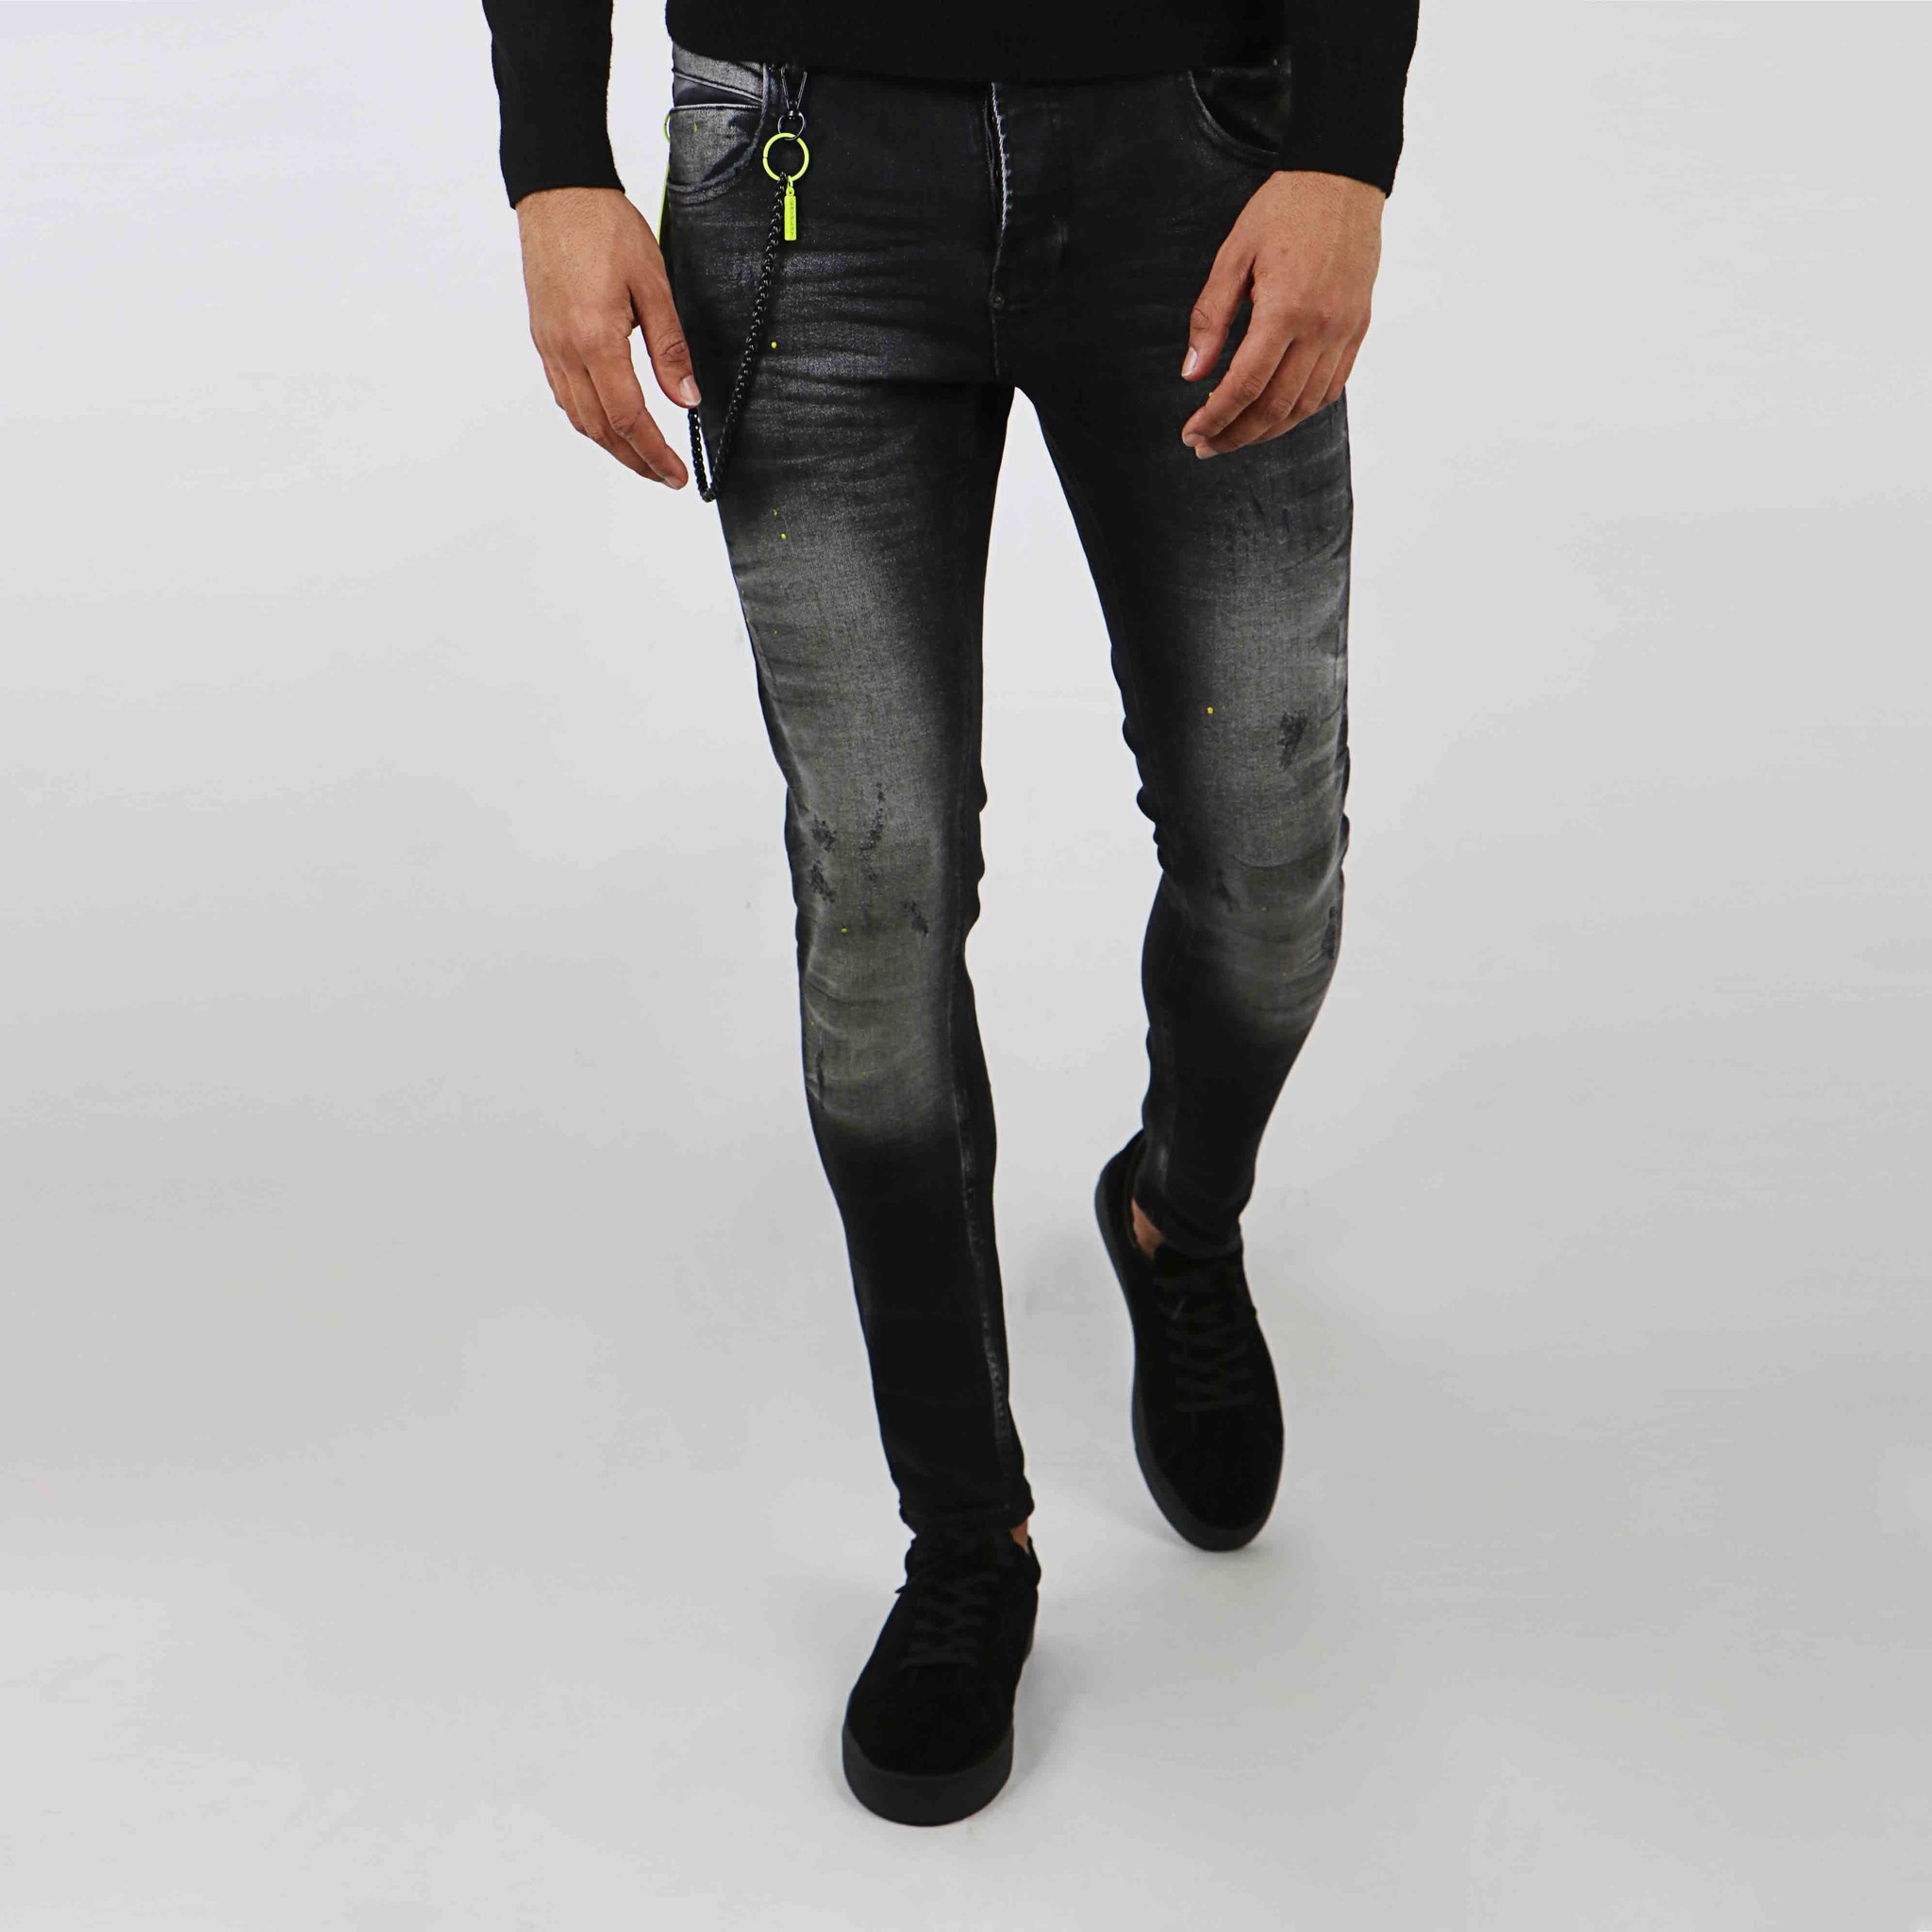 Zwarte Skinny Jeans Heren - vanaf € 39,95 | Alleen bij Valenci! - VALENCI